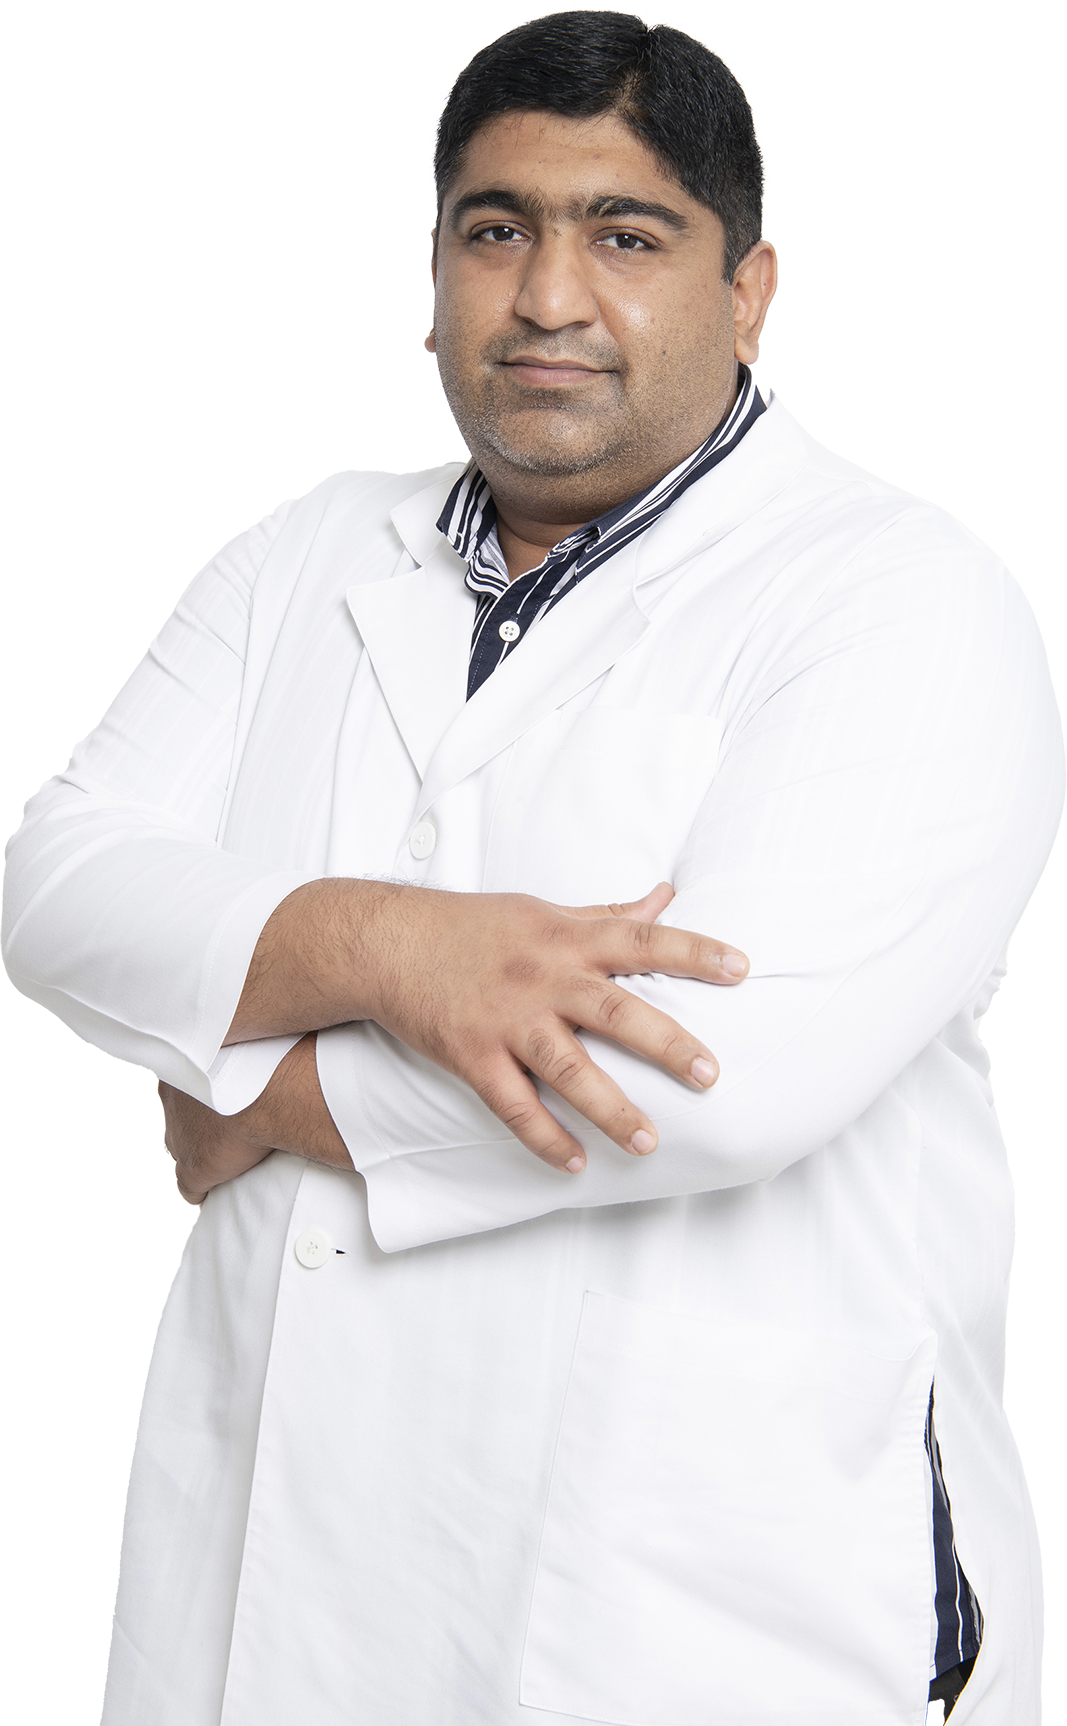 Dr. Radwan Shahid